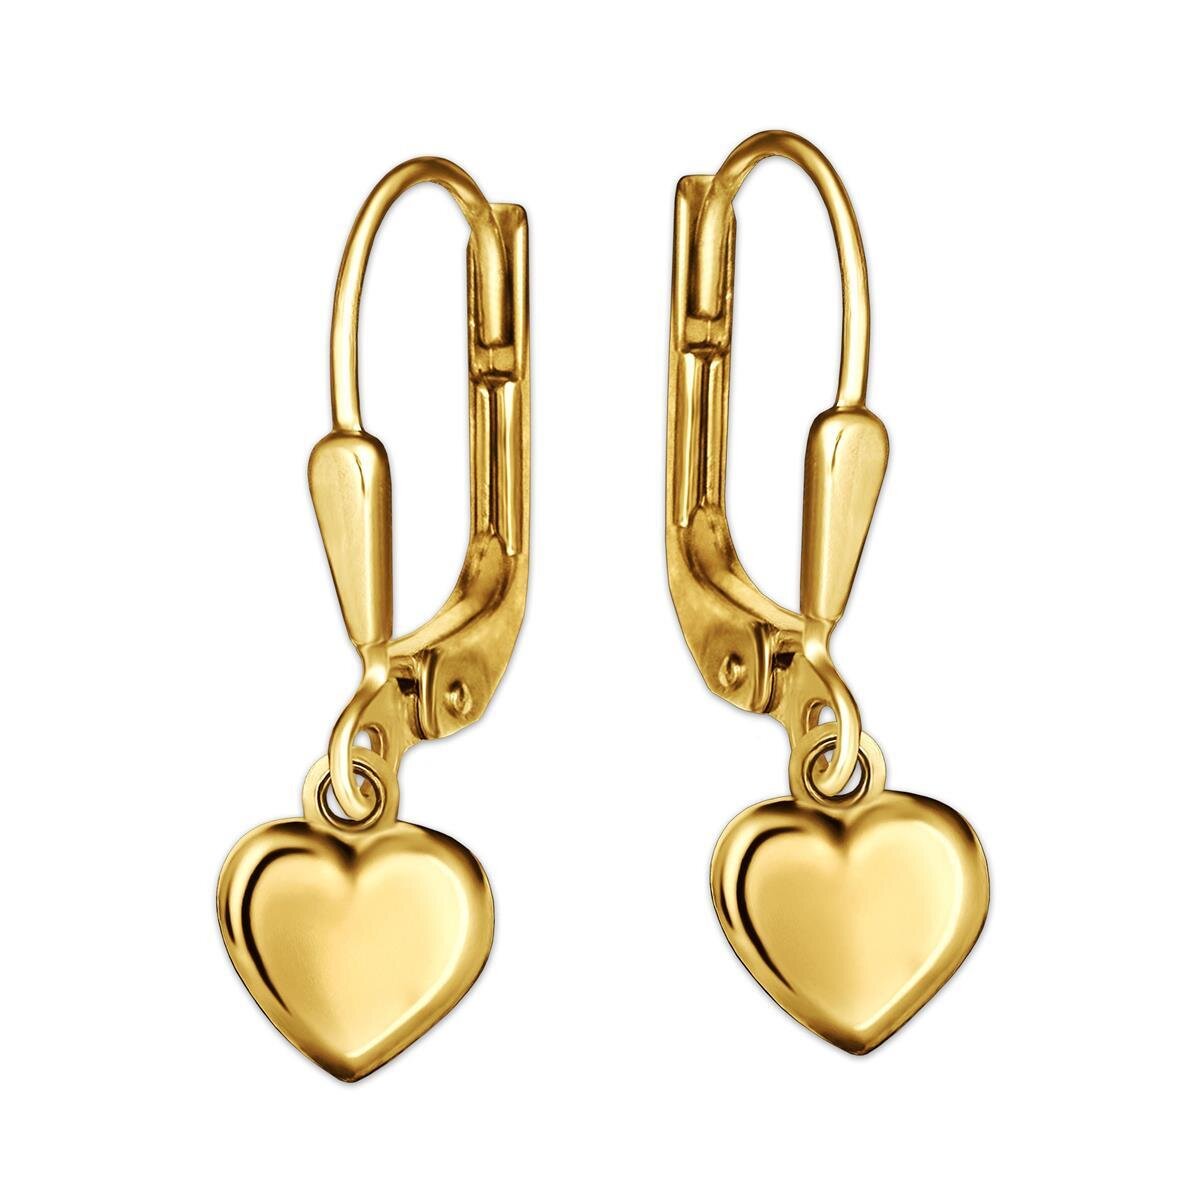 Goldene Damen Ohrringe 23 mm mit Herz 8 x 8 mm schlicht gewölbt und glänzend 925 Sterling Silber goldplattiert